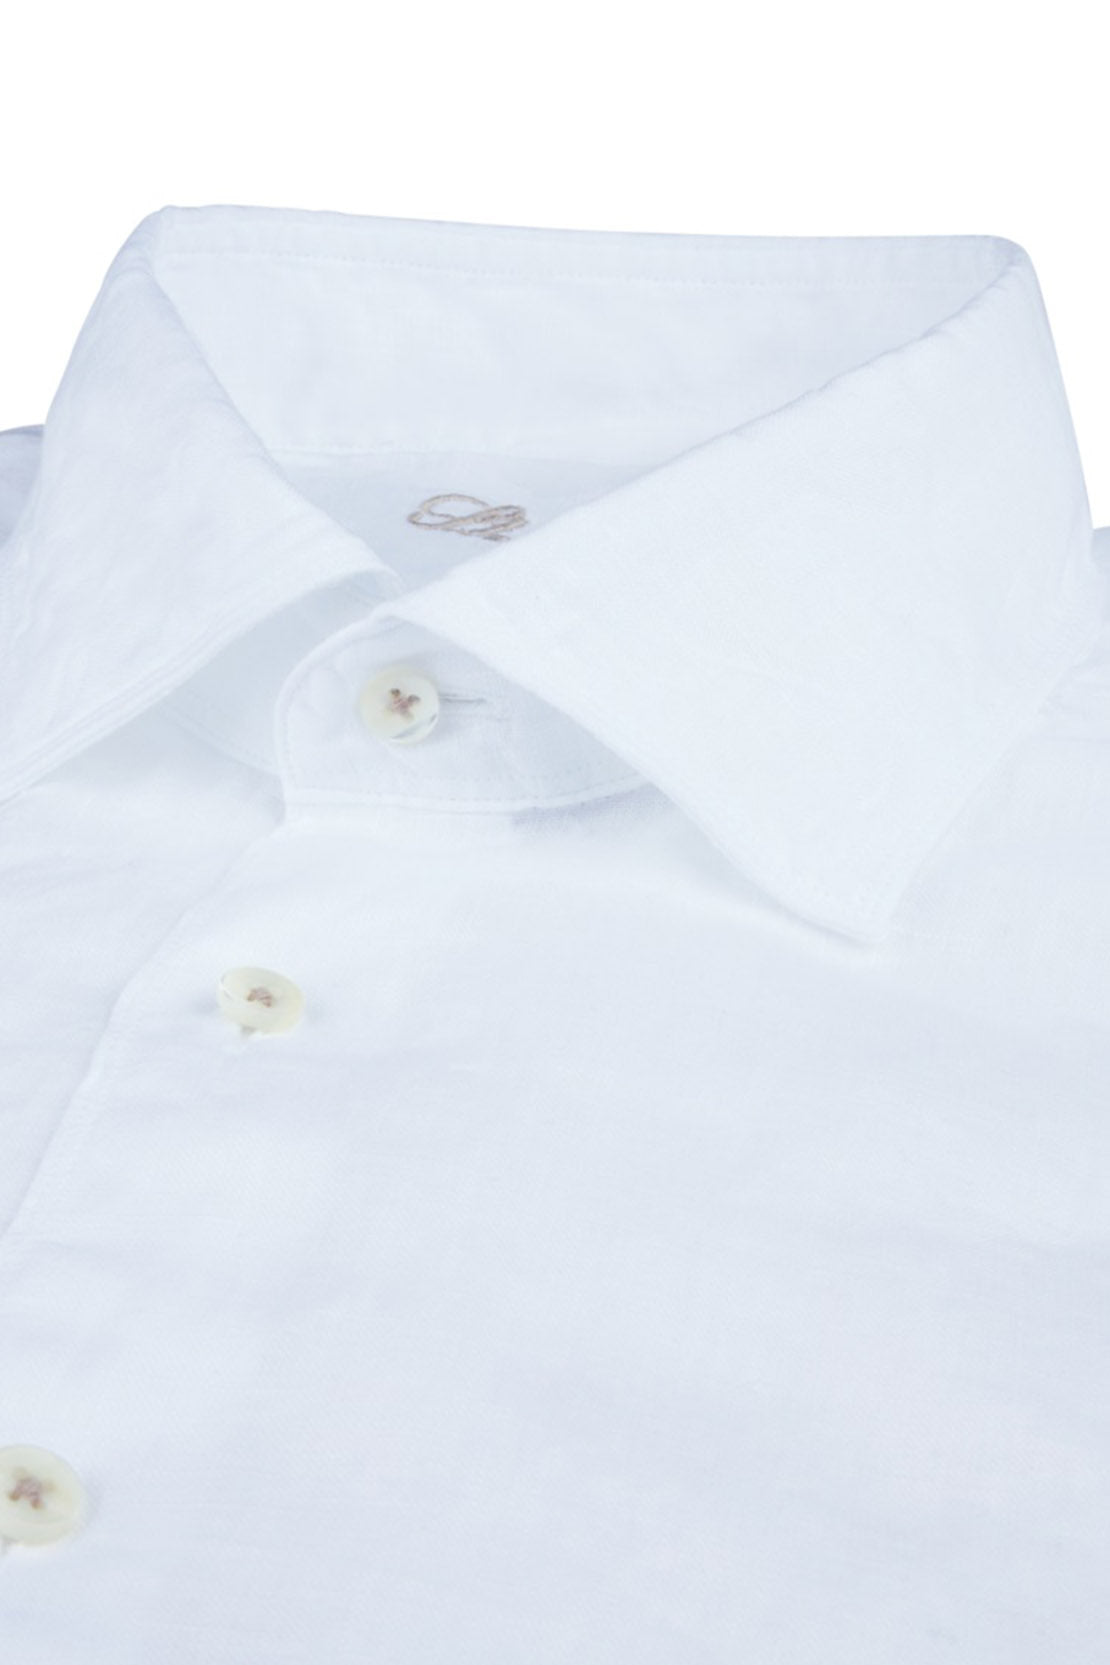 STENSTROMS - SLIMLINE White Linen Shirt 7747217970000